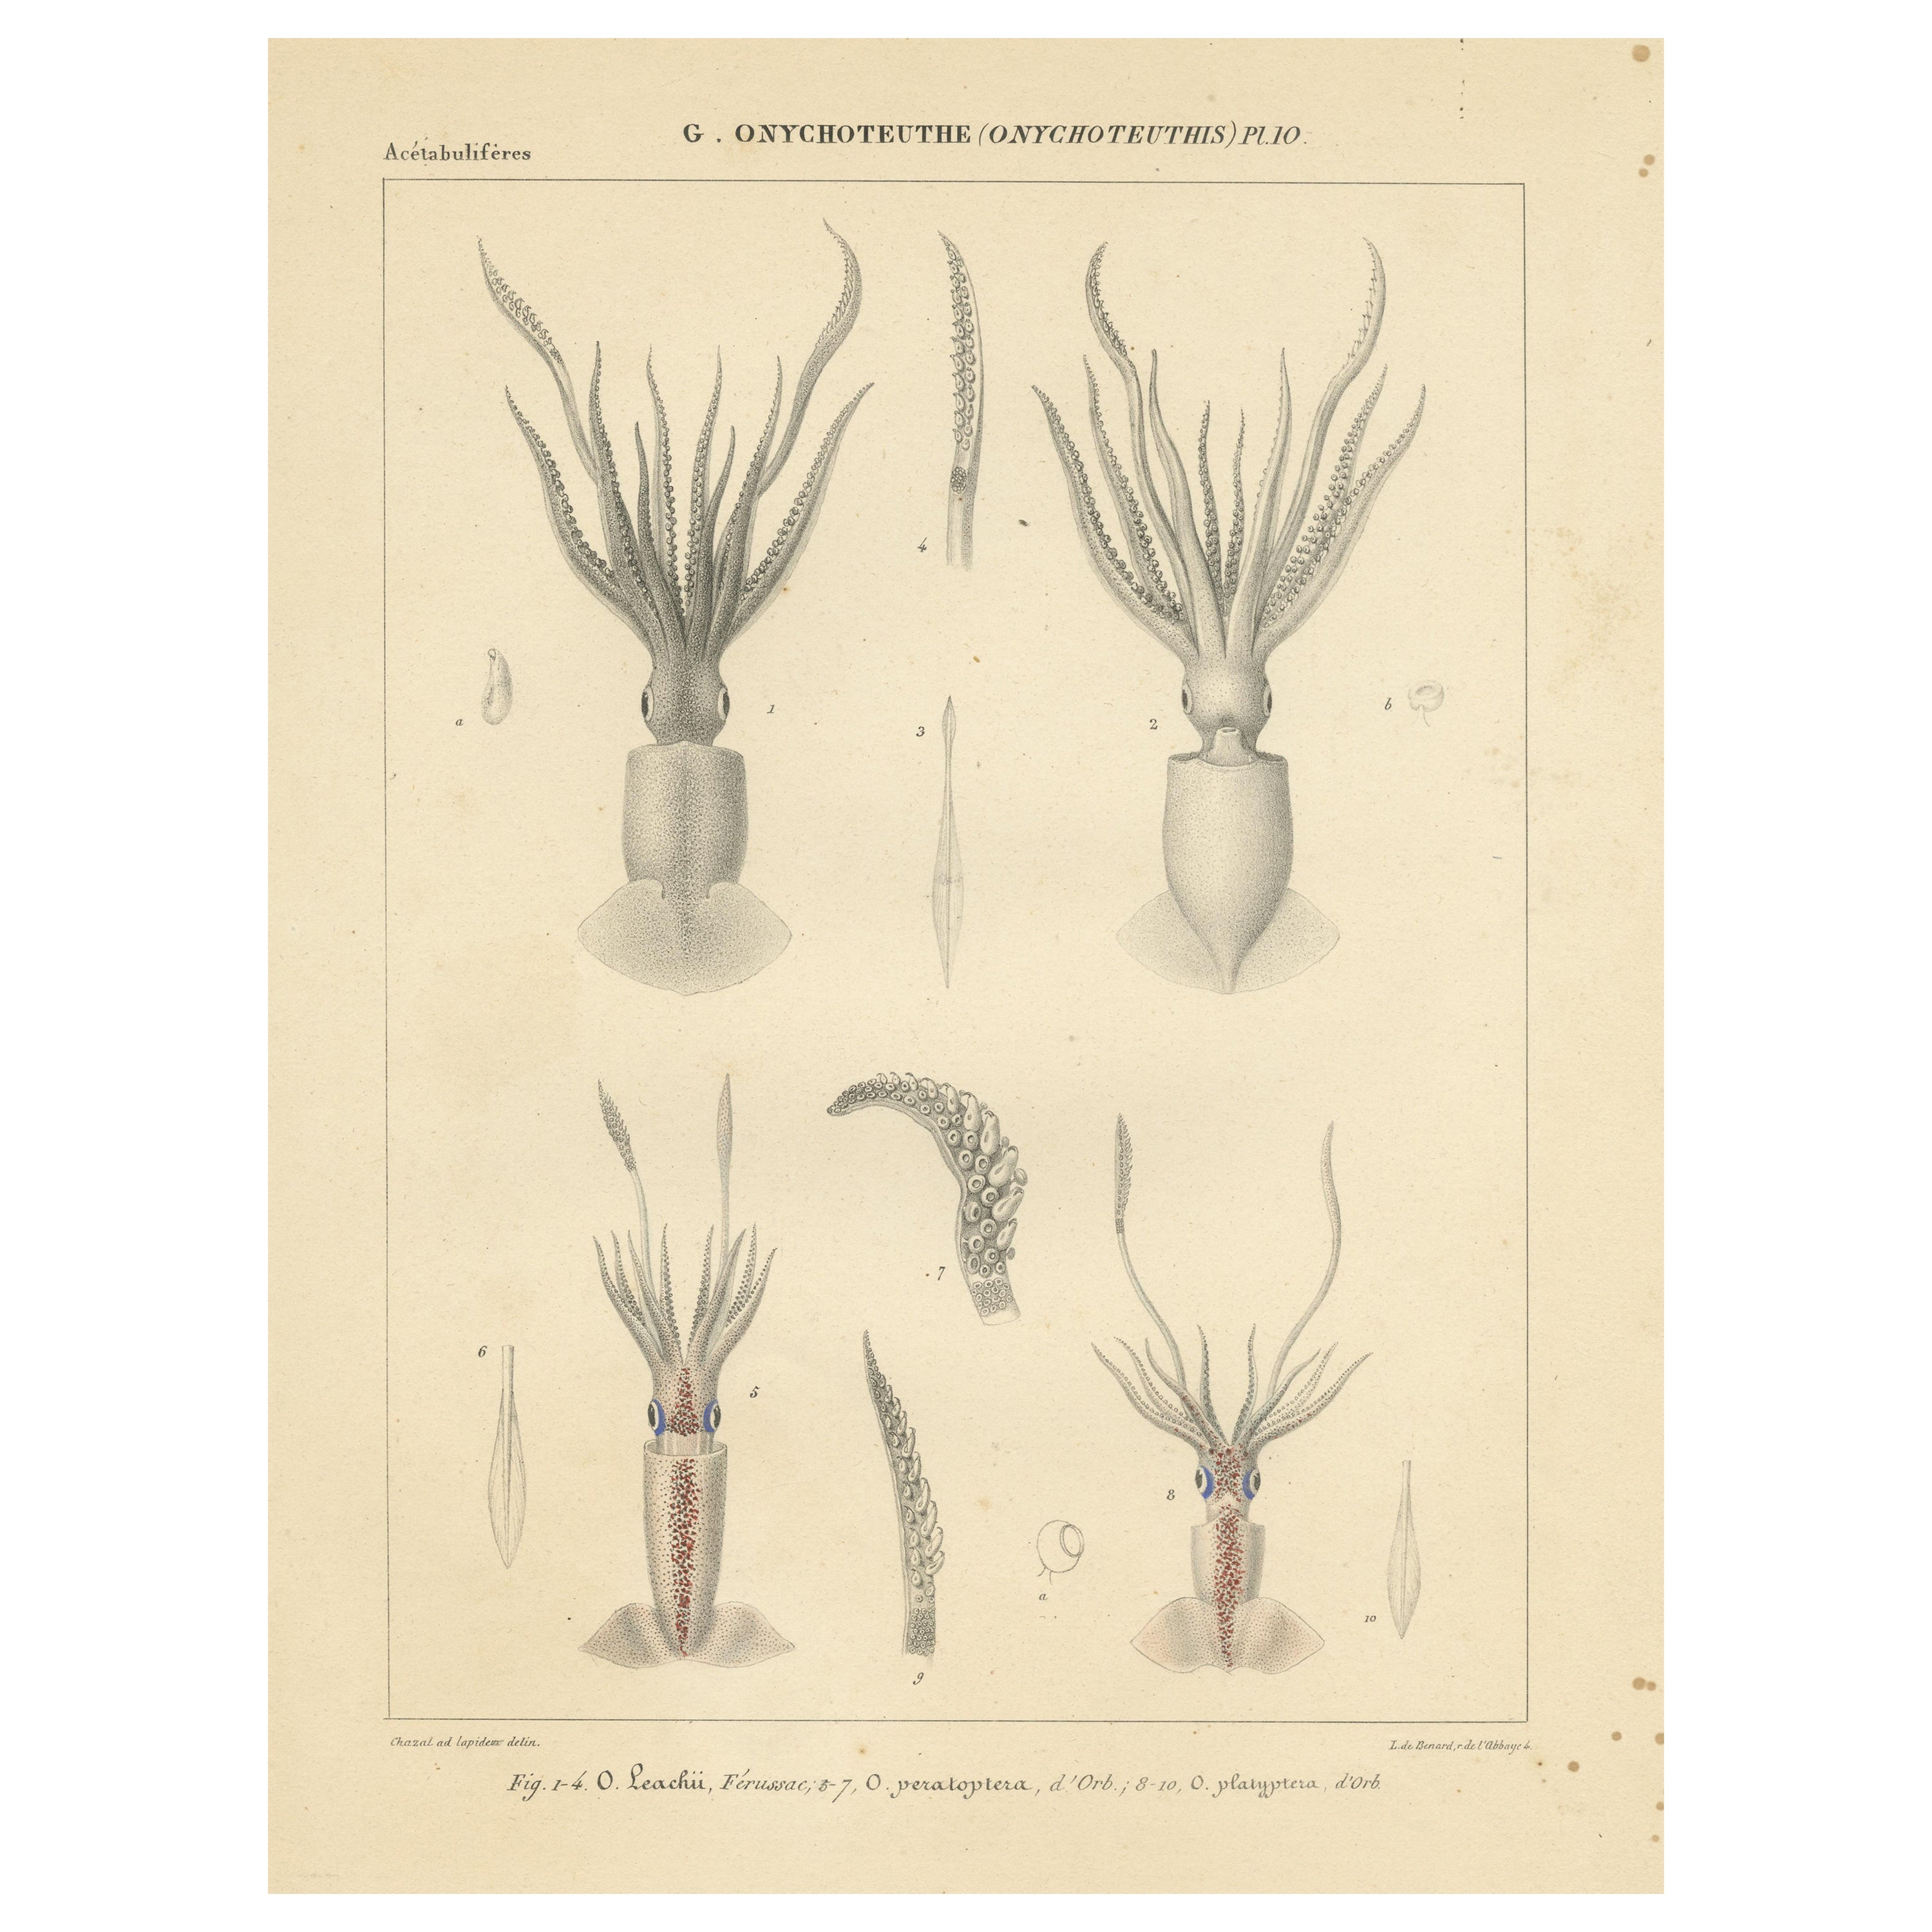 Antique Print of Onychoteuthis Squid species